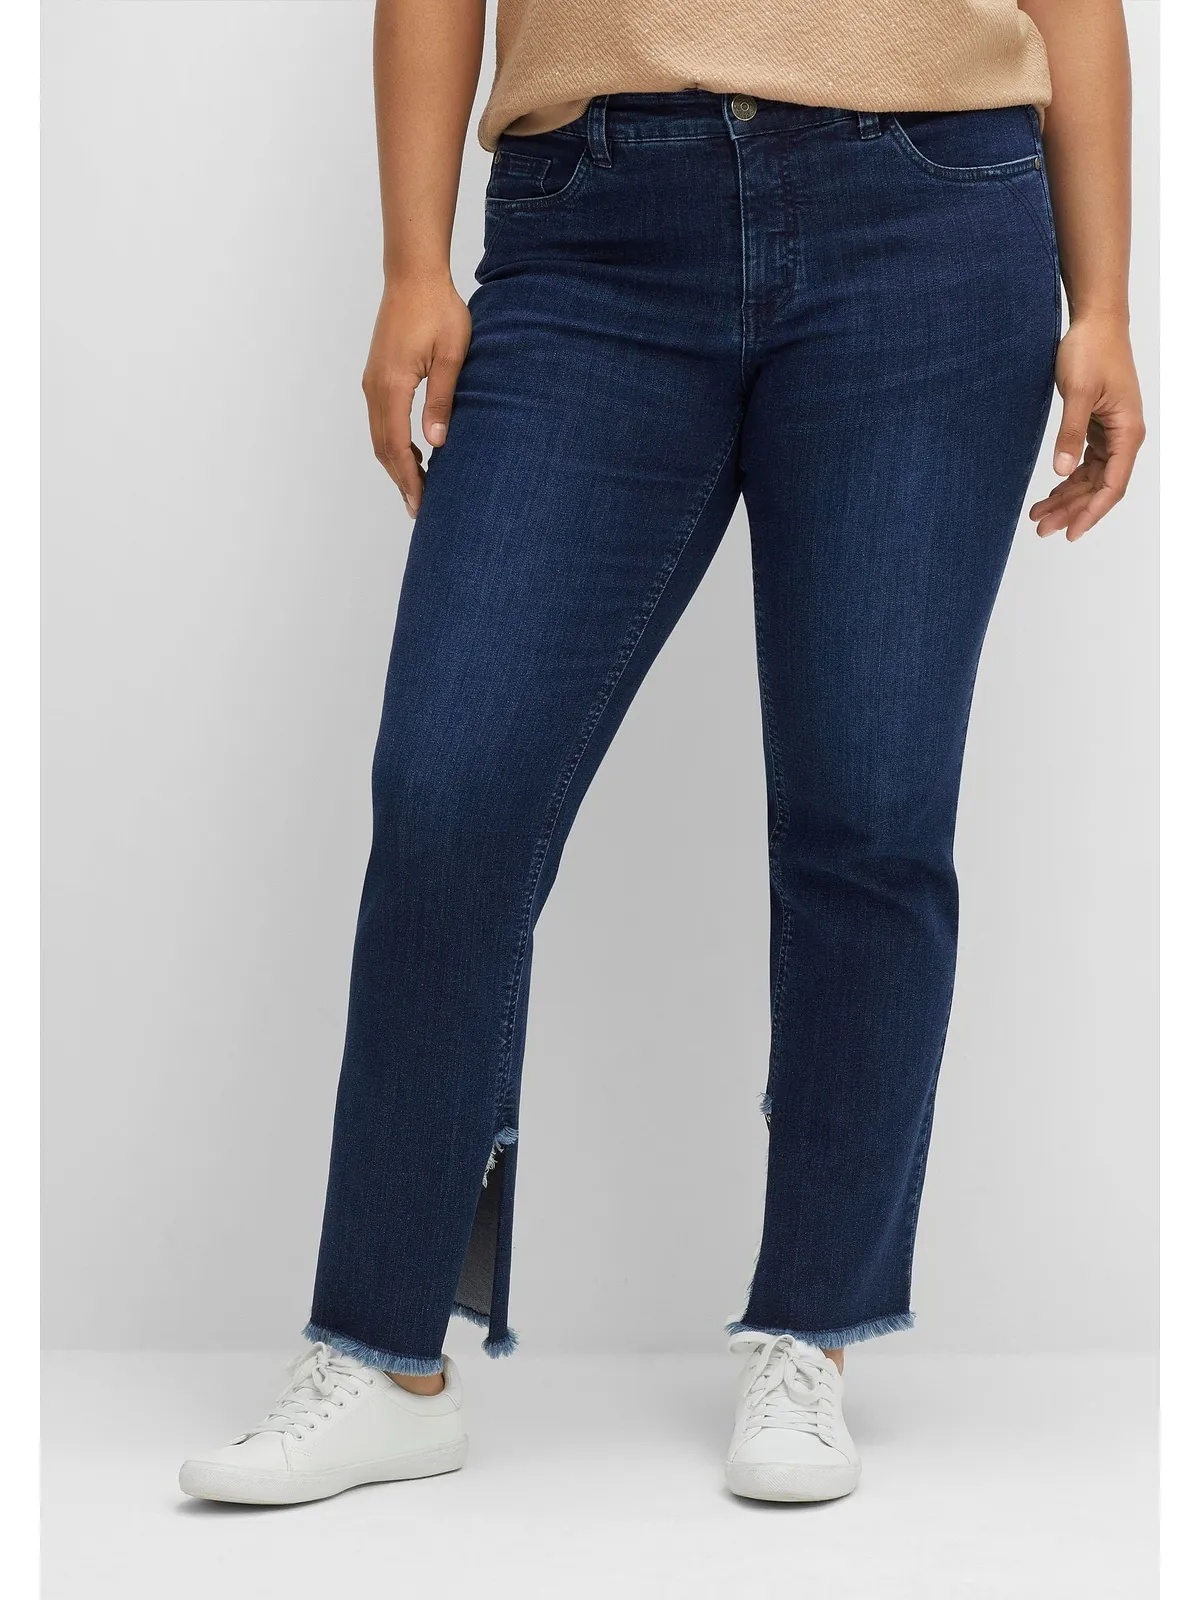 Gerade Jeans SHEEGO "Große Größen" Gr. 46, Normalgrößen, blau (dark blue denim) Damen Jeans Gerade